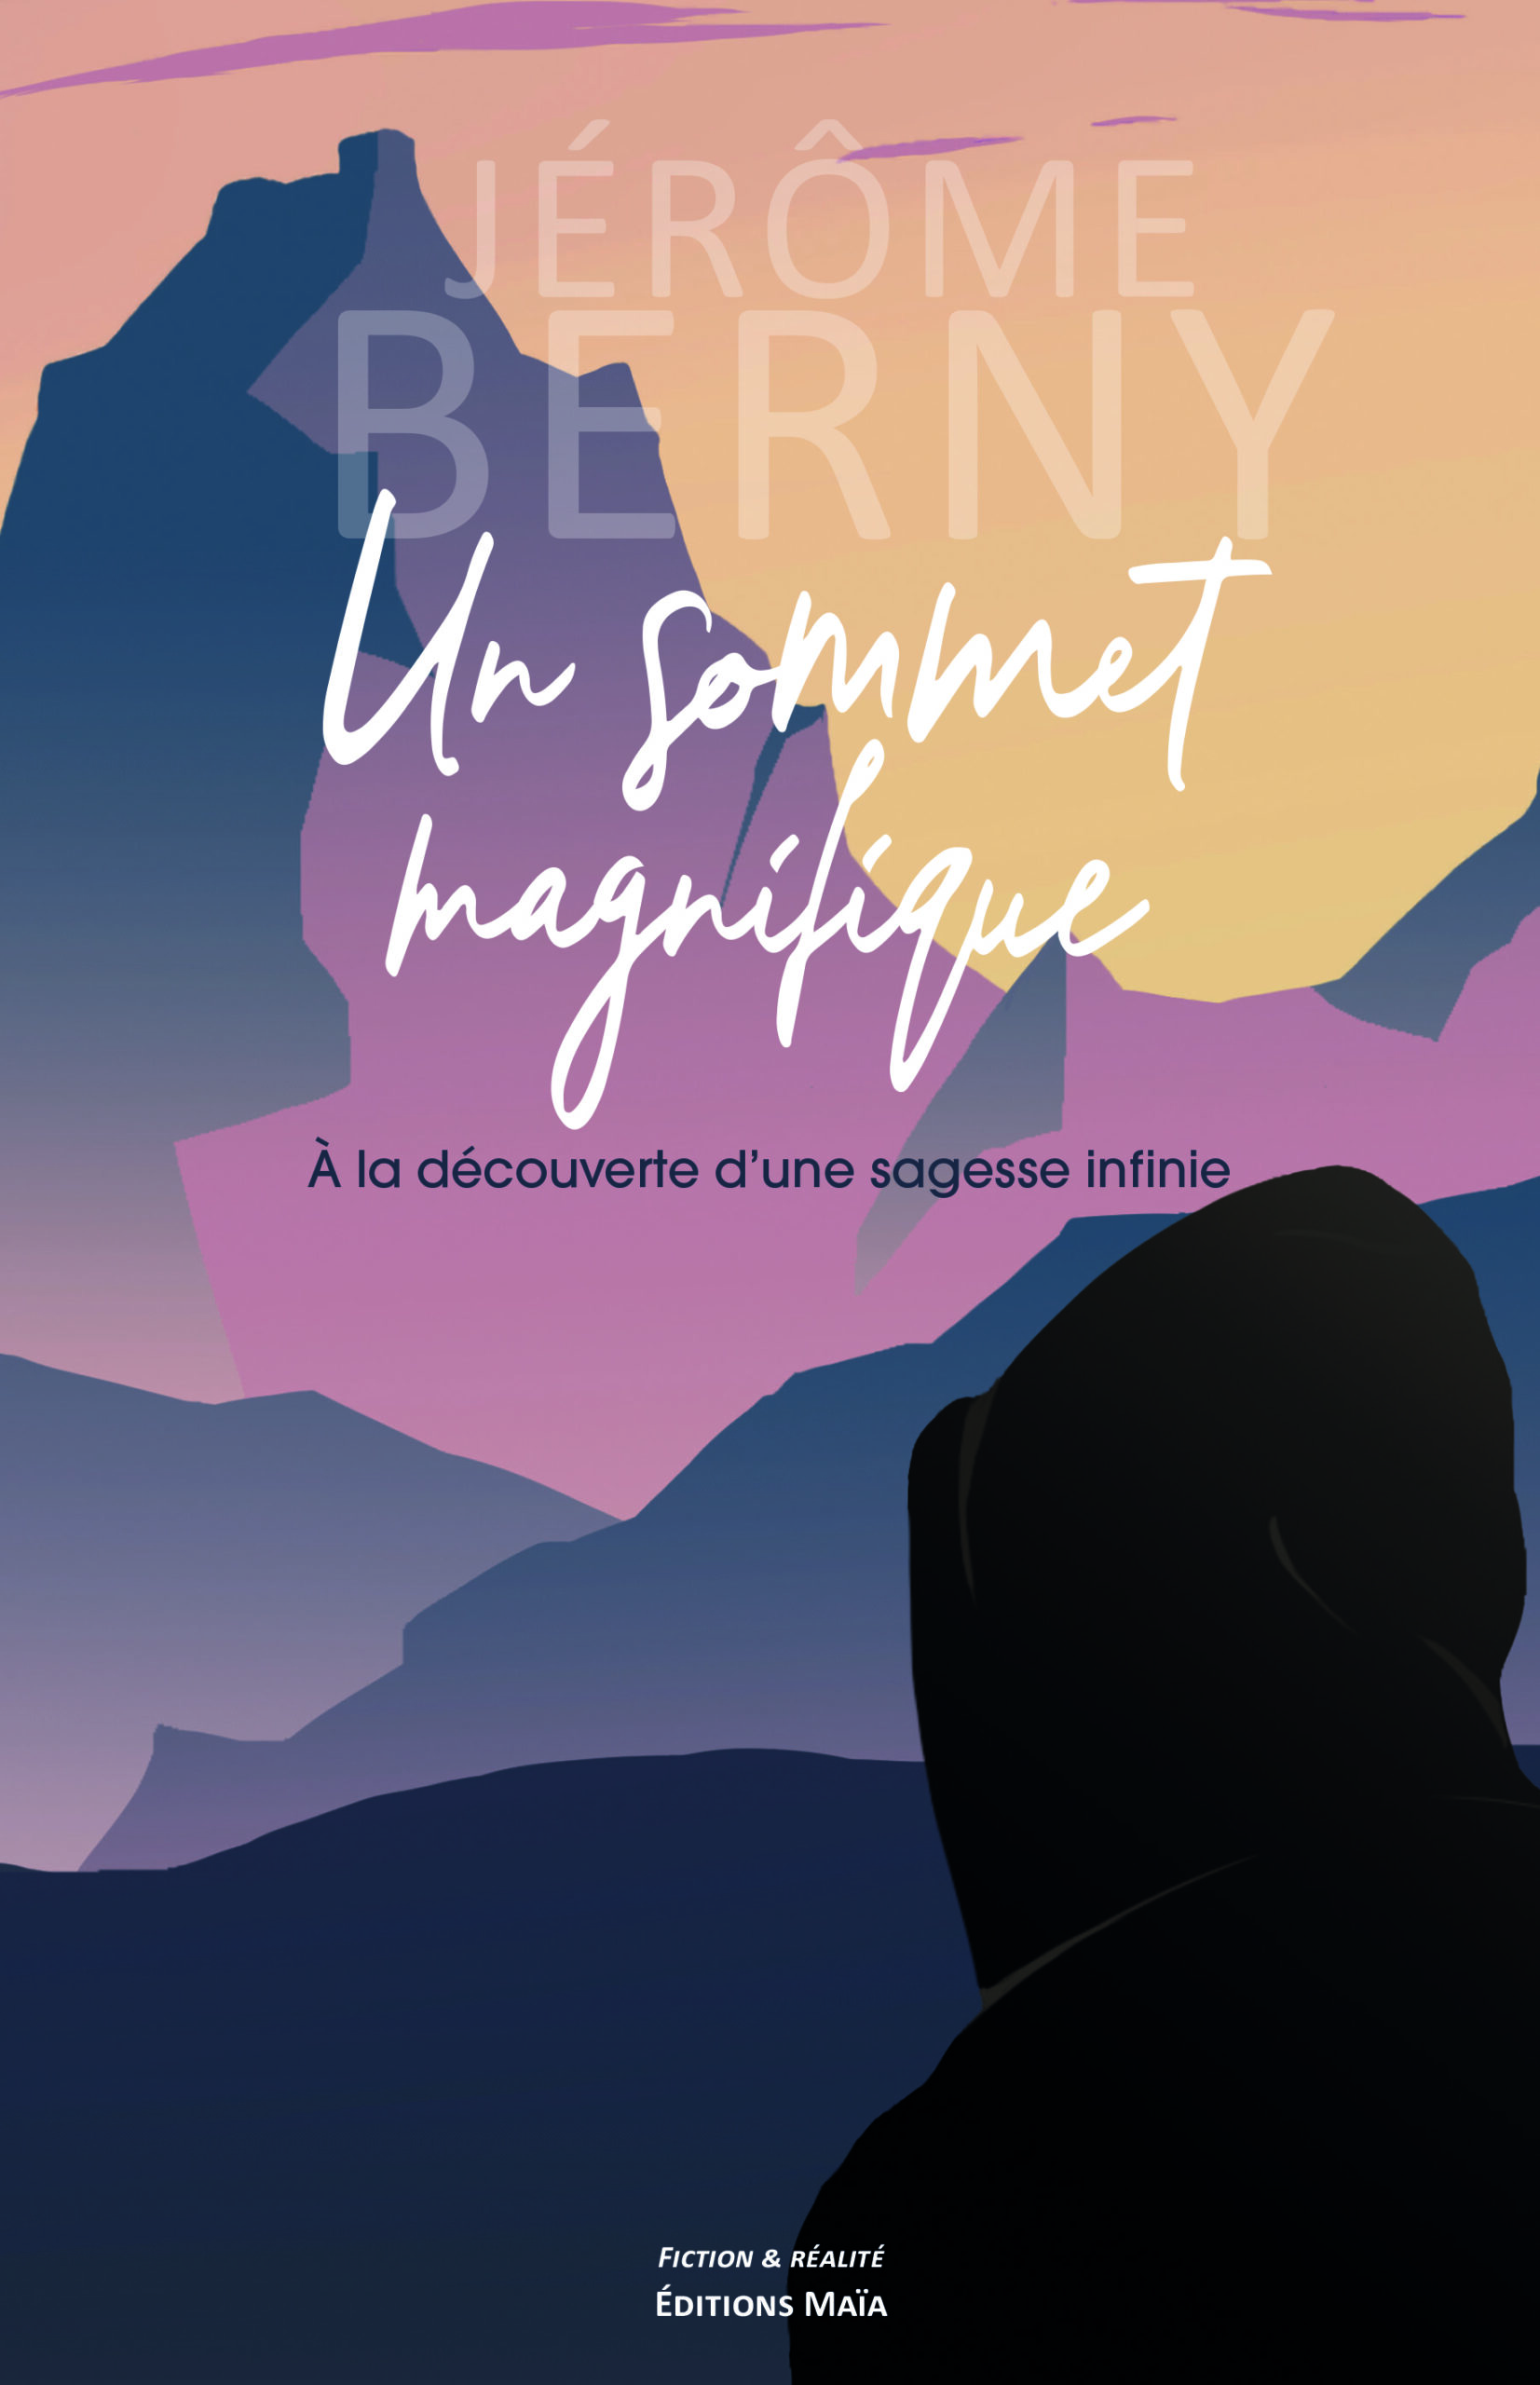 Entretien avec Jérôme Berny – Un sommet magnifique